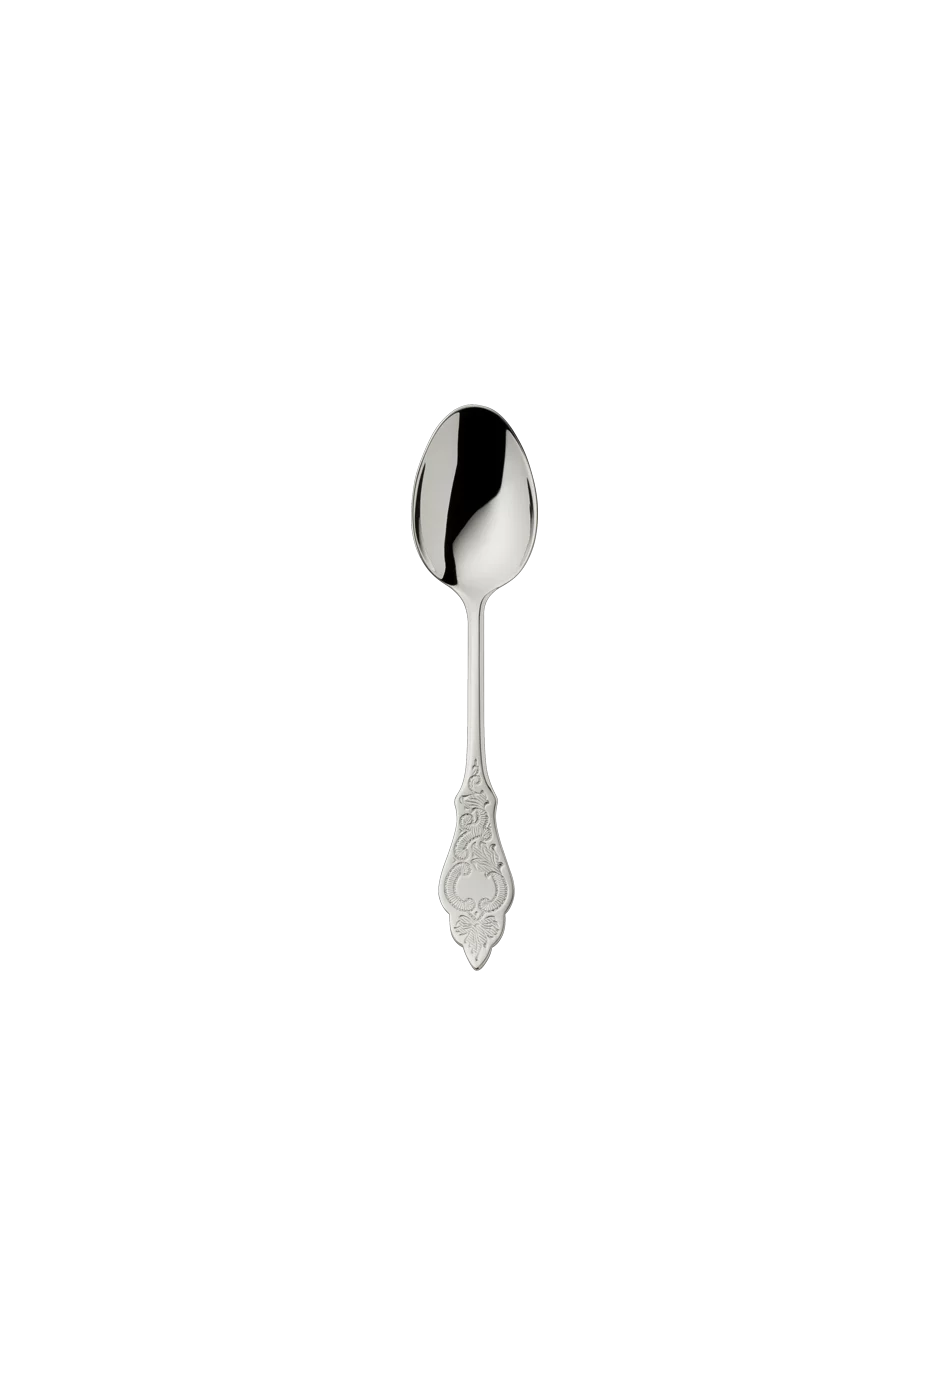 Ostfriesen Tea Spoon 12,0 Cm (18/8 stainless steel)